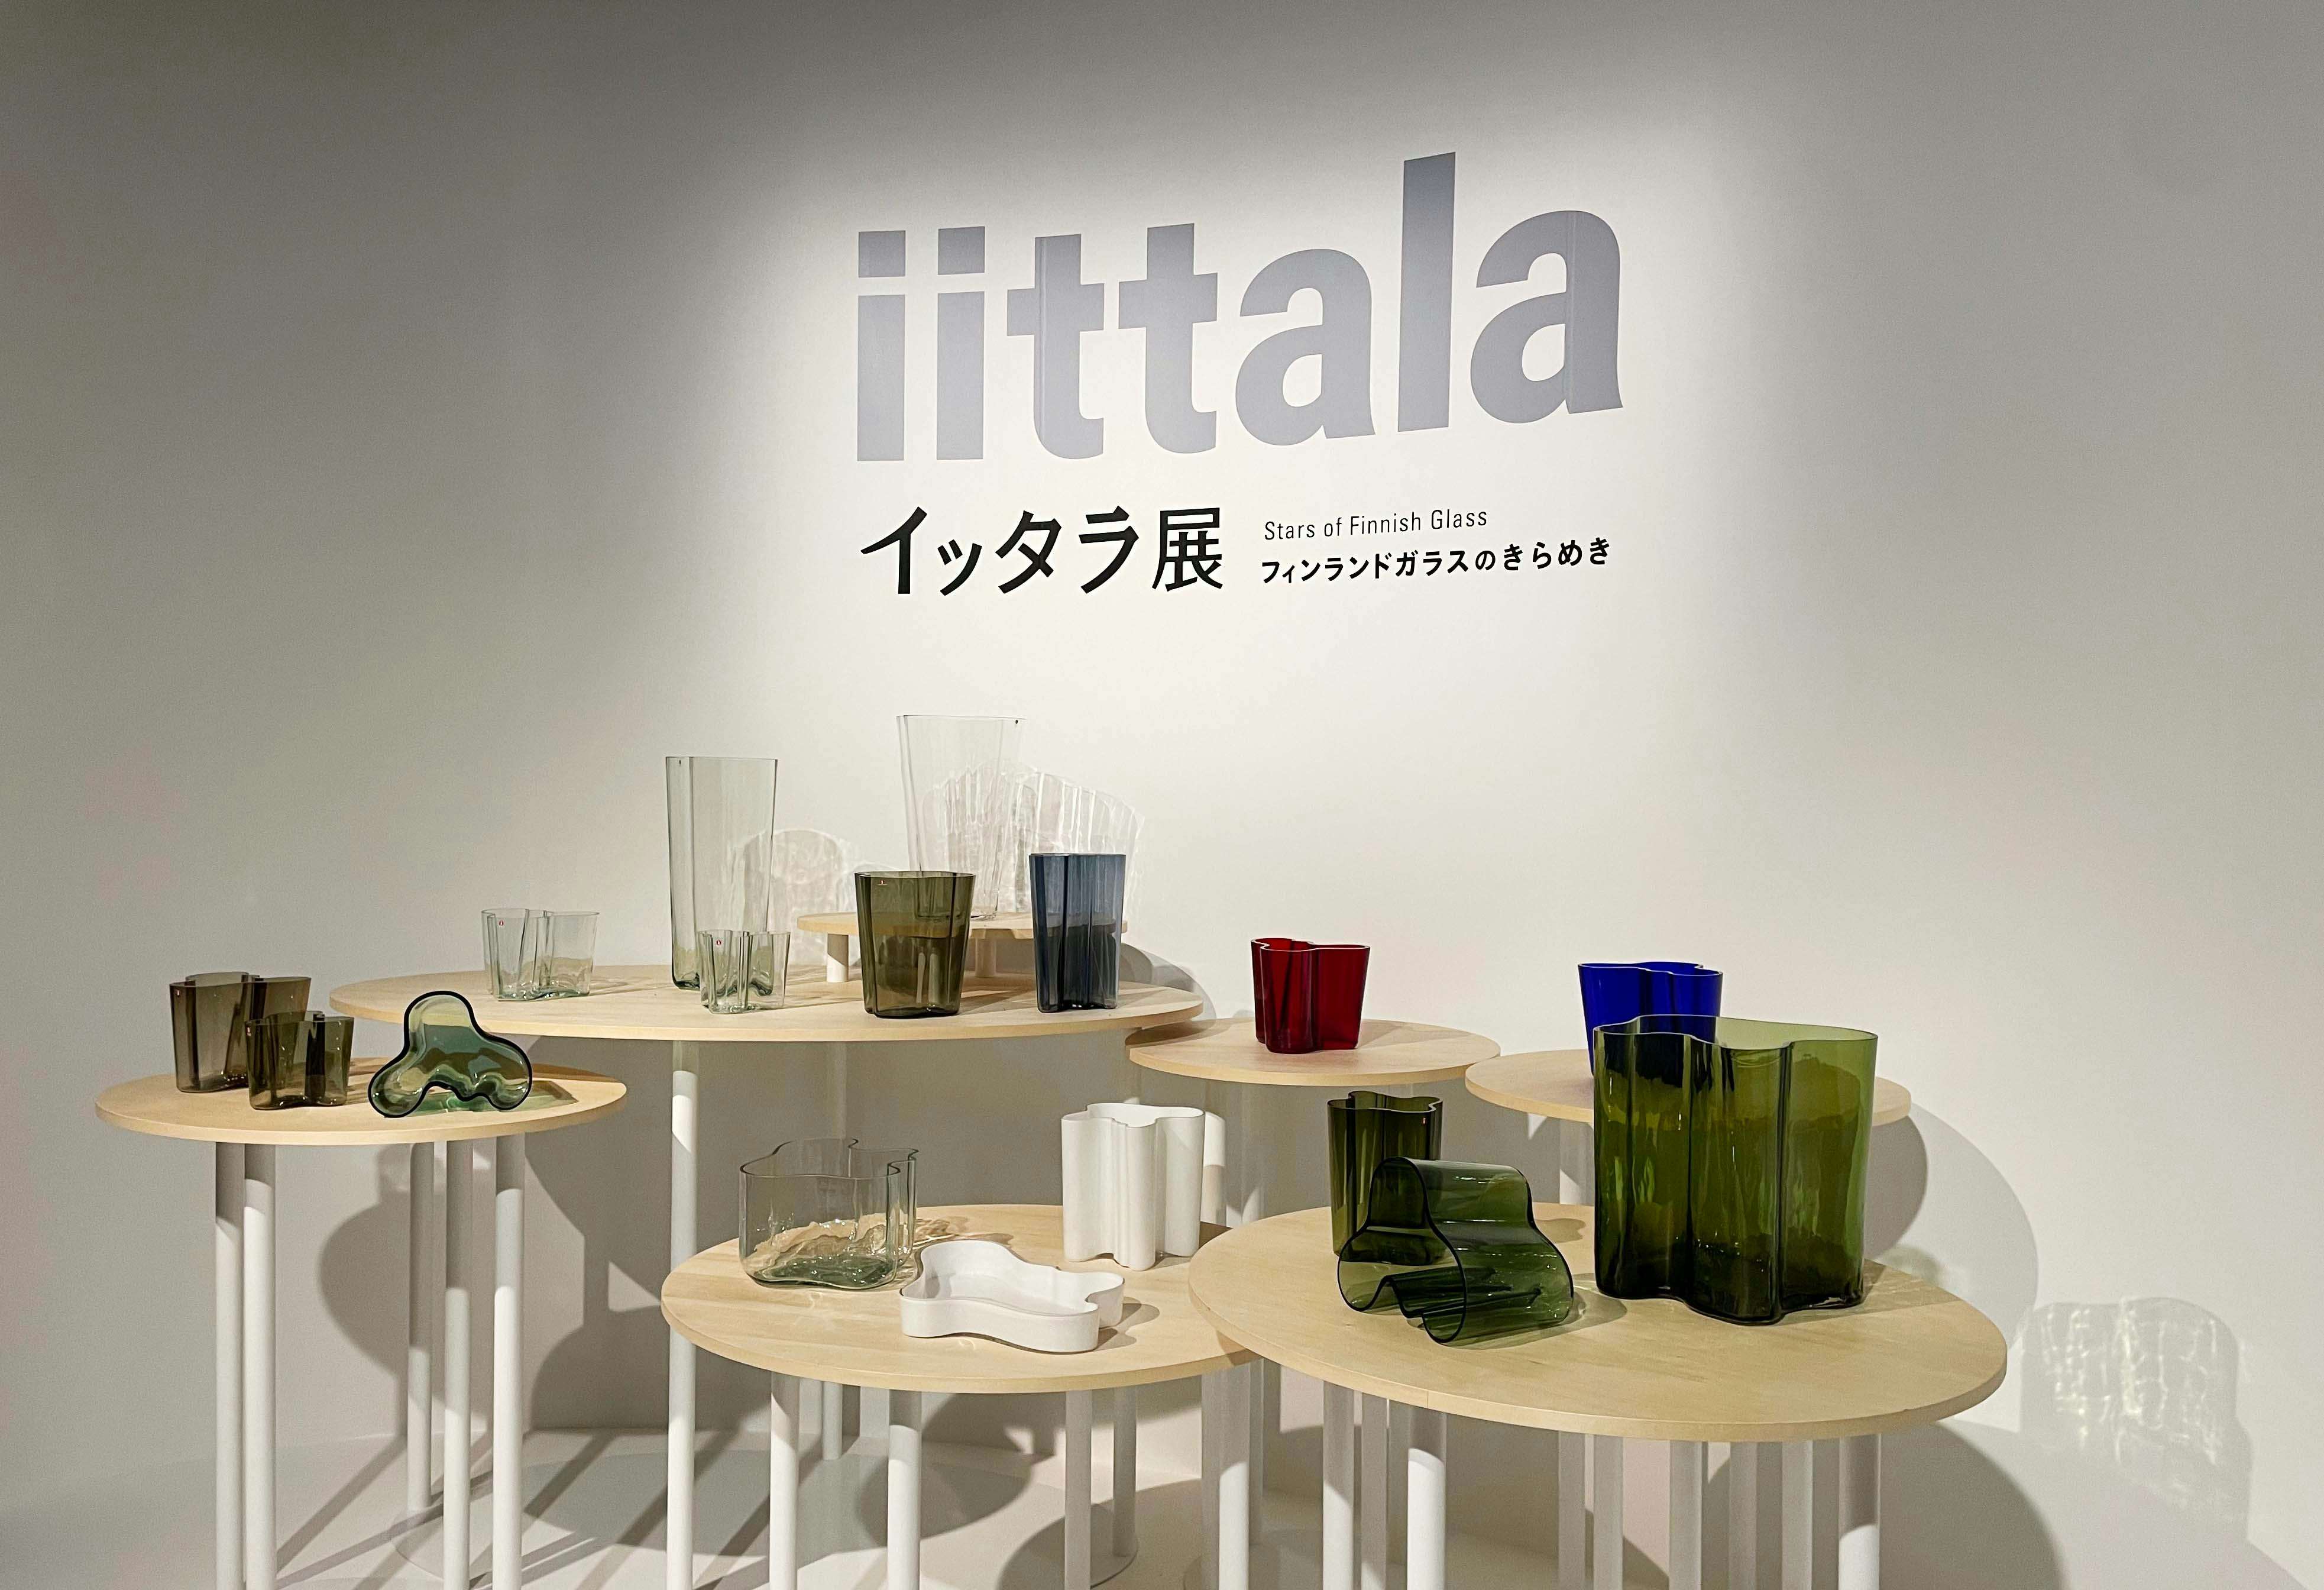 イッタラ日本初の大規模展覧会で振り返る、その美学と歴史｜美術手帖